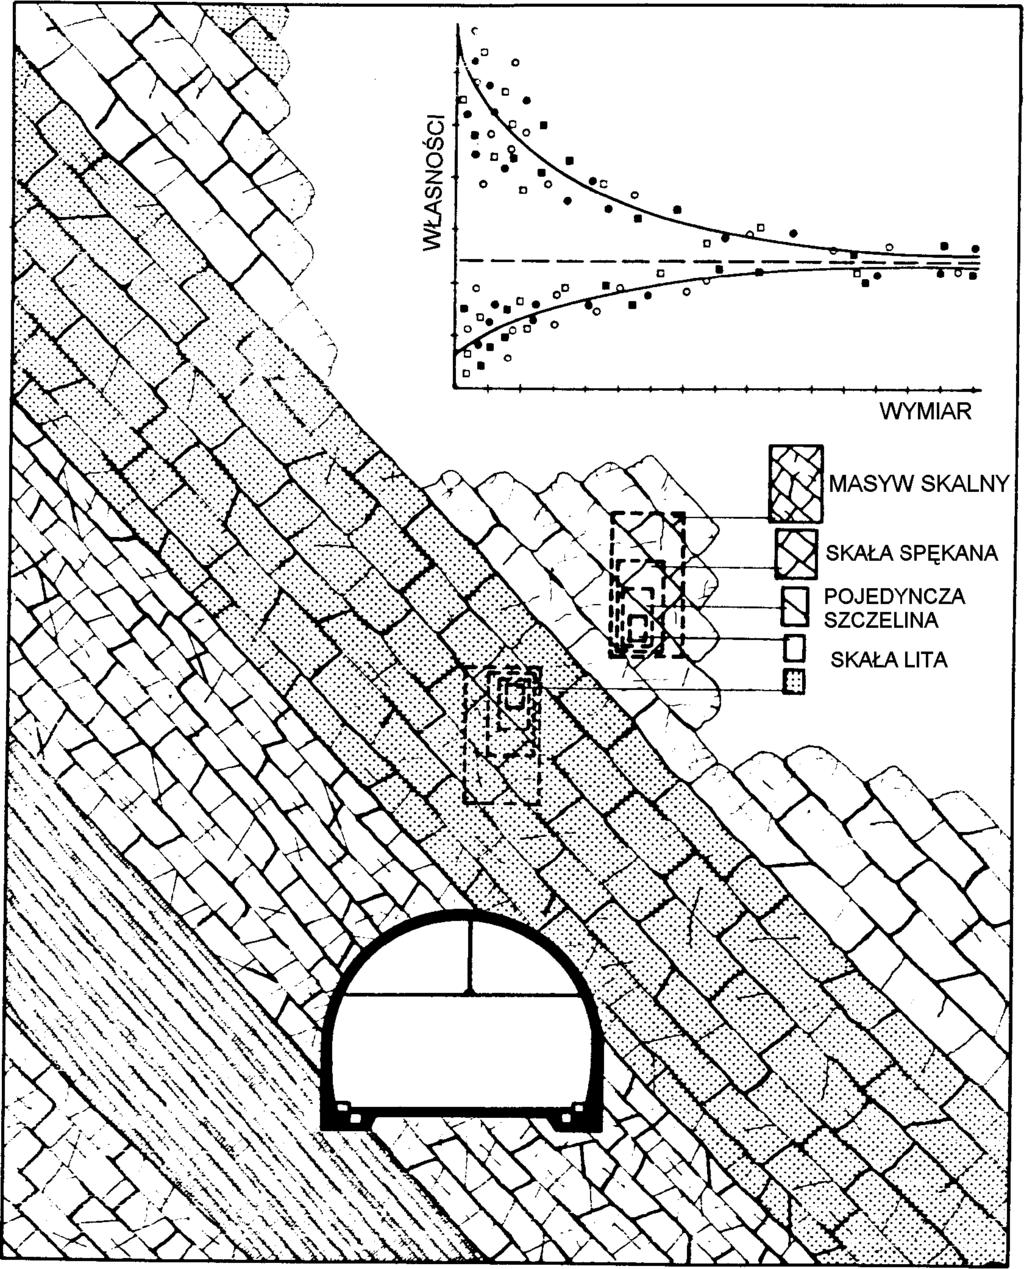 Profil górotworu jest ustalany na podstawie rdzeni uzyskanych z otworów wiertniczych powierzchniowych i uściślany na podstawie wierceń dołowych, otworami wiertniczymi o mniejszej długości.